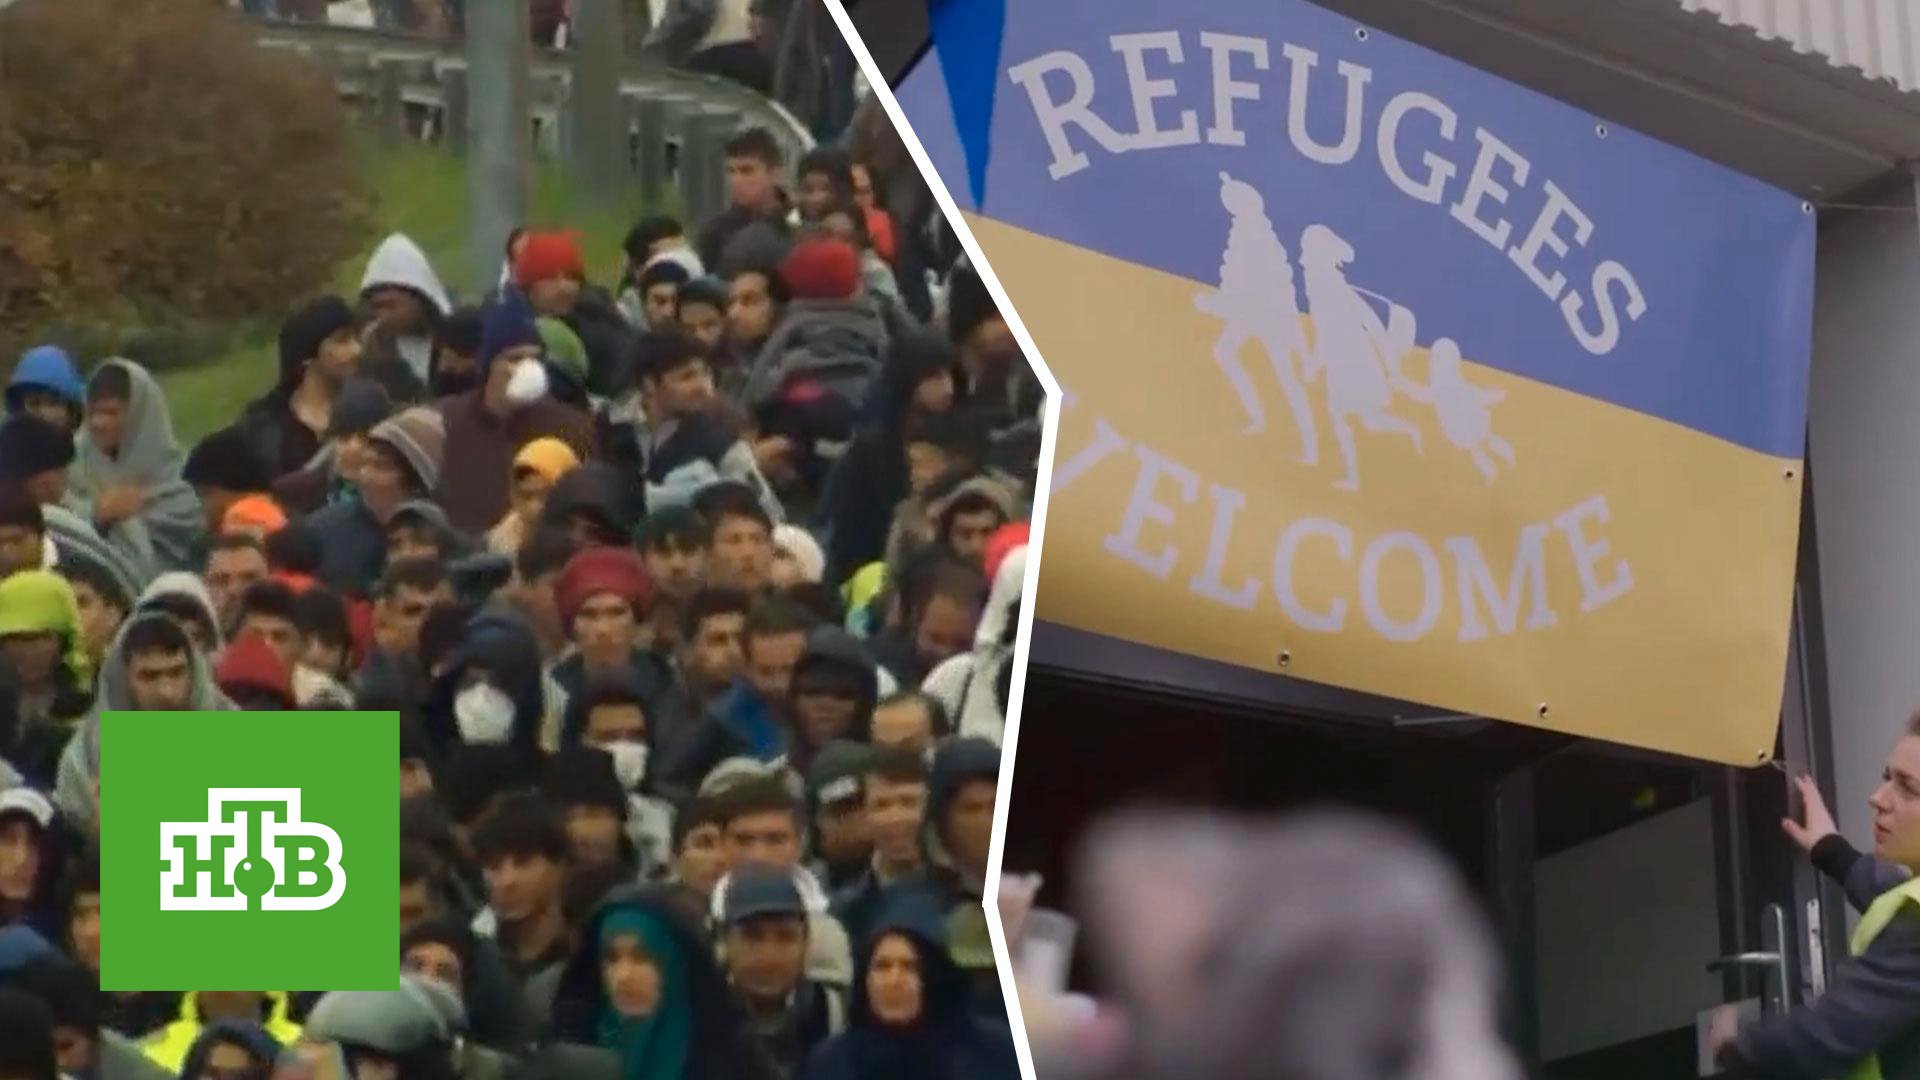 Германия не резиновая: афганцев притесняют в угоду украинским беженцам